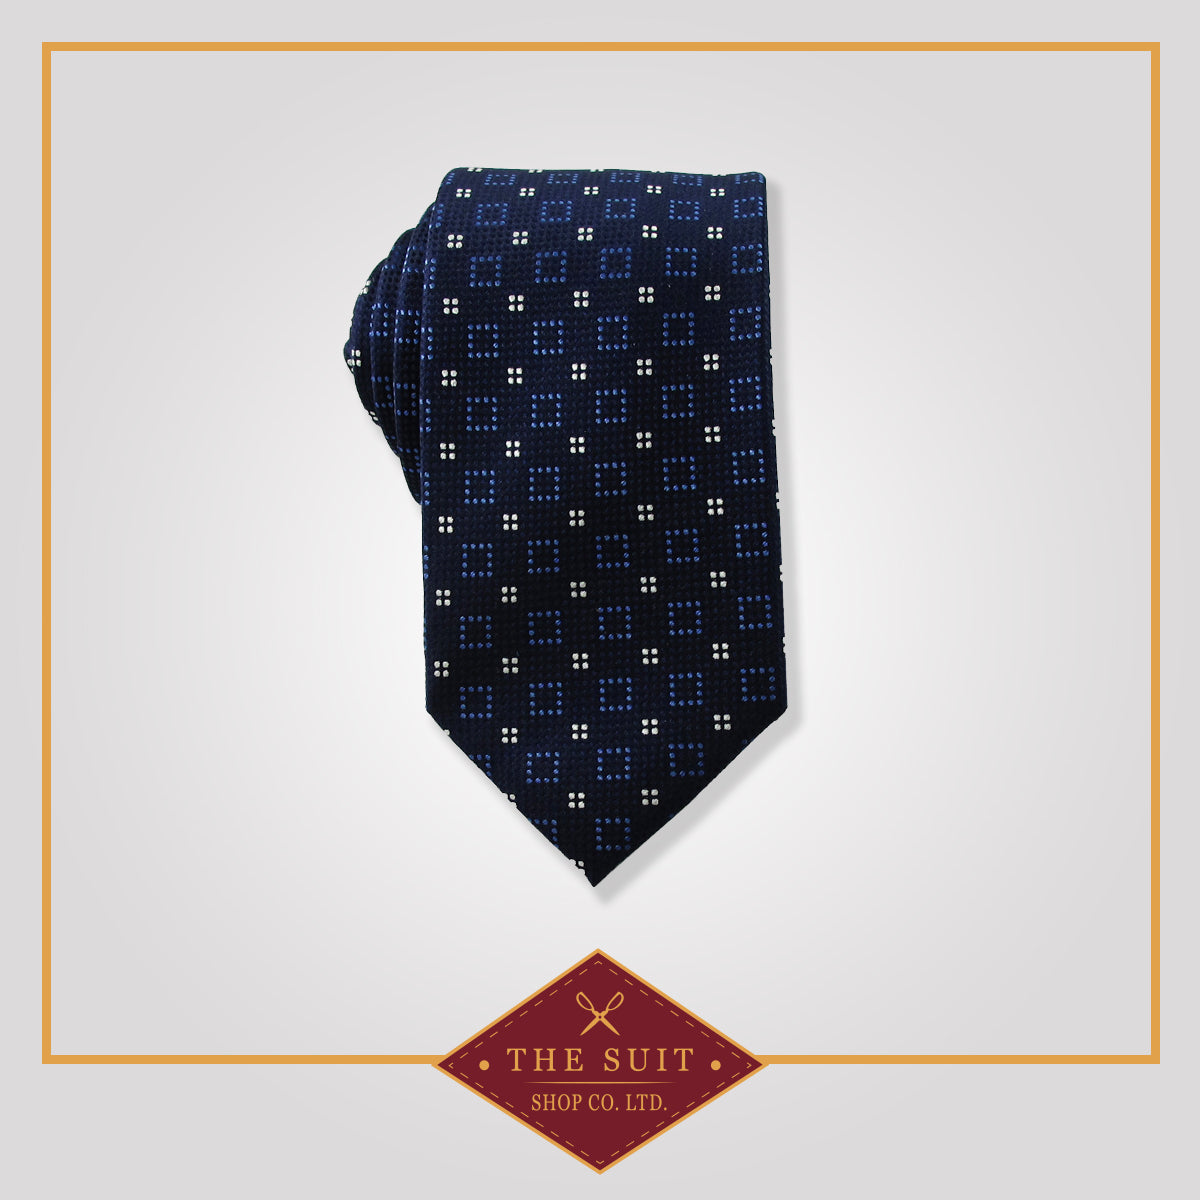 Blue Zodiac Patterned Tie